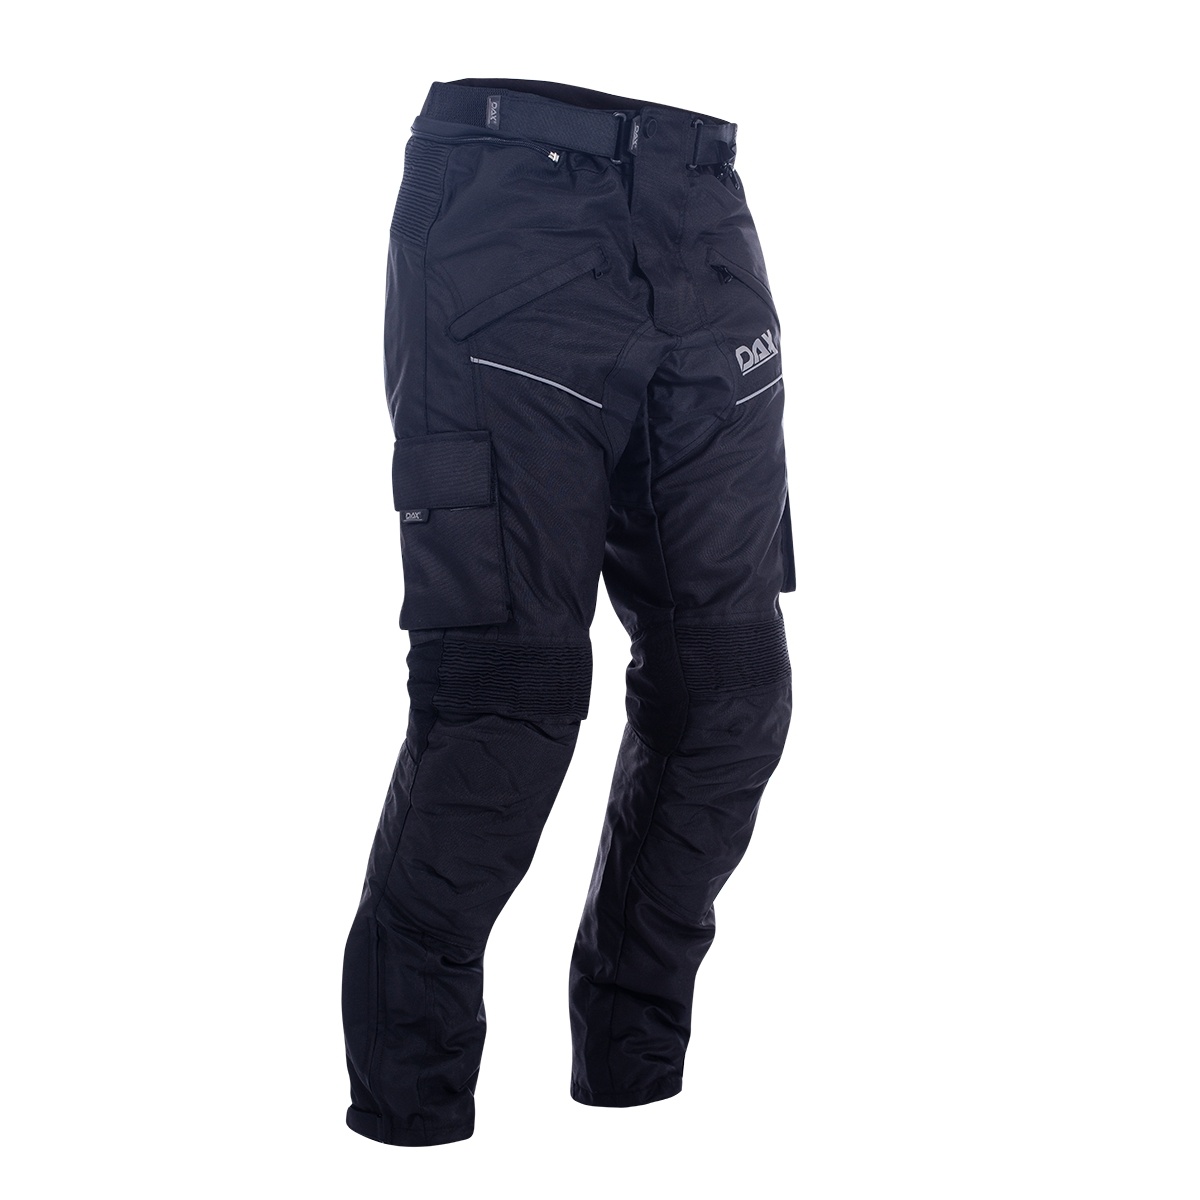 Obrázek produktu DAX ACTION Black kalhoty, MaxDura/Dublan, s chrániči 2609-PNT-B